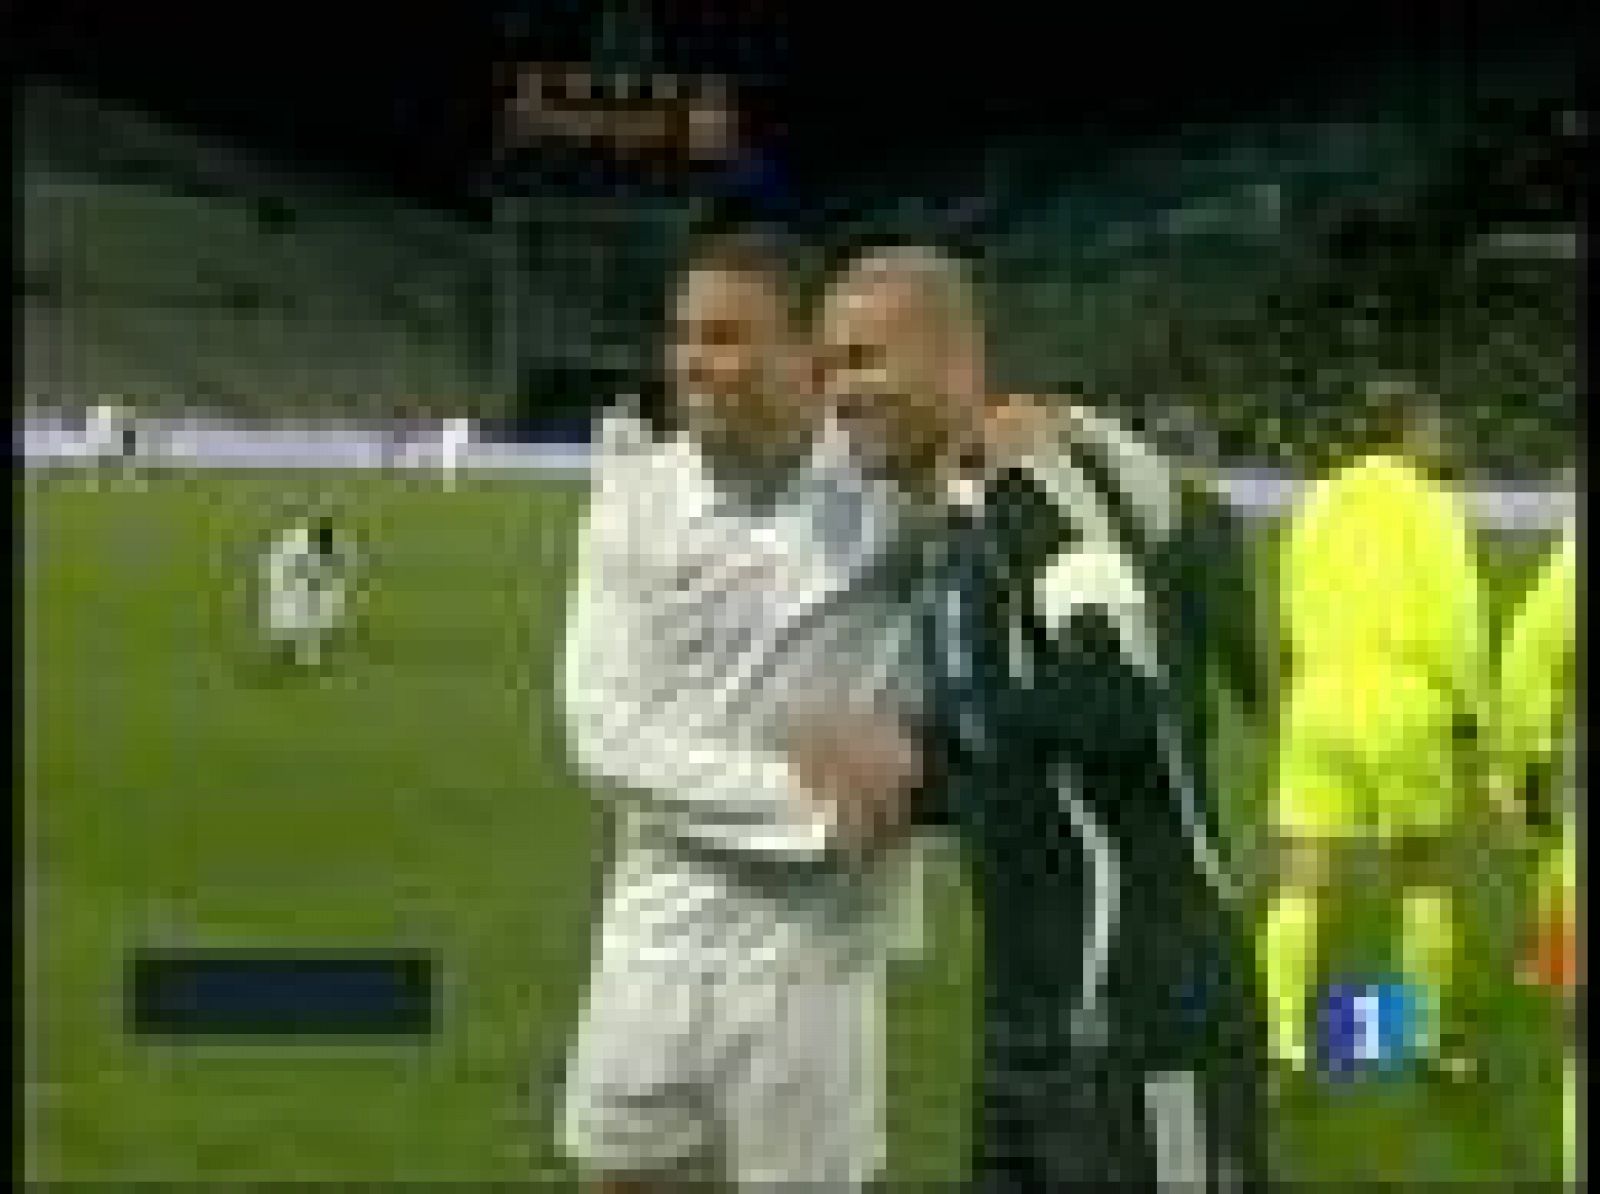 Zidane y Ronaldo regresan para disputar su ya tradicional partido solidario, esta vez la recaudación irá destinada a las víctimas del terremoto de Haití. En esta ocasión Ronaldo se perderá el encuentro, pero el que no fallará será el francés en representación de ambos.